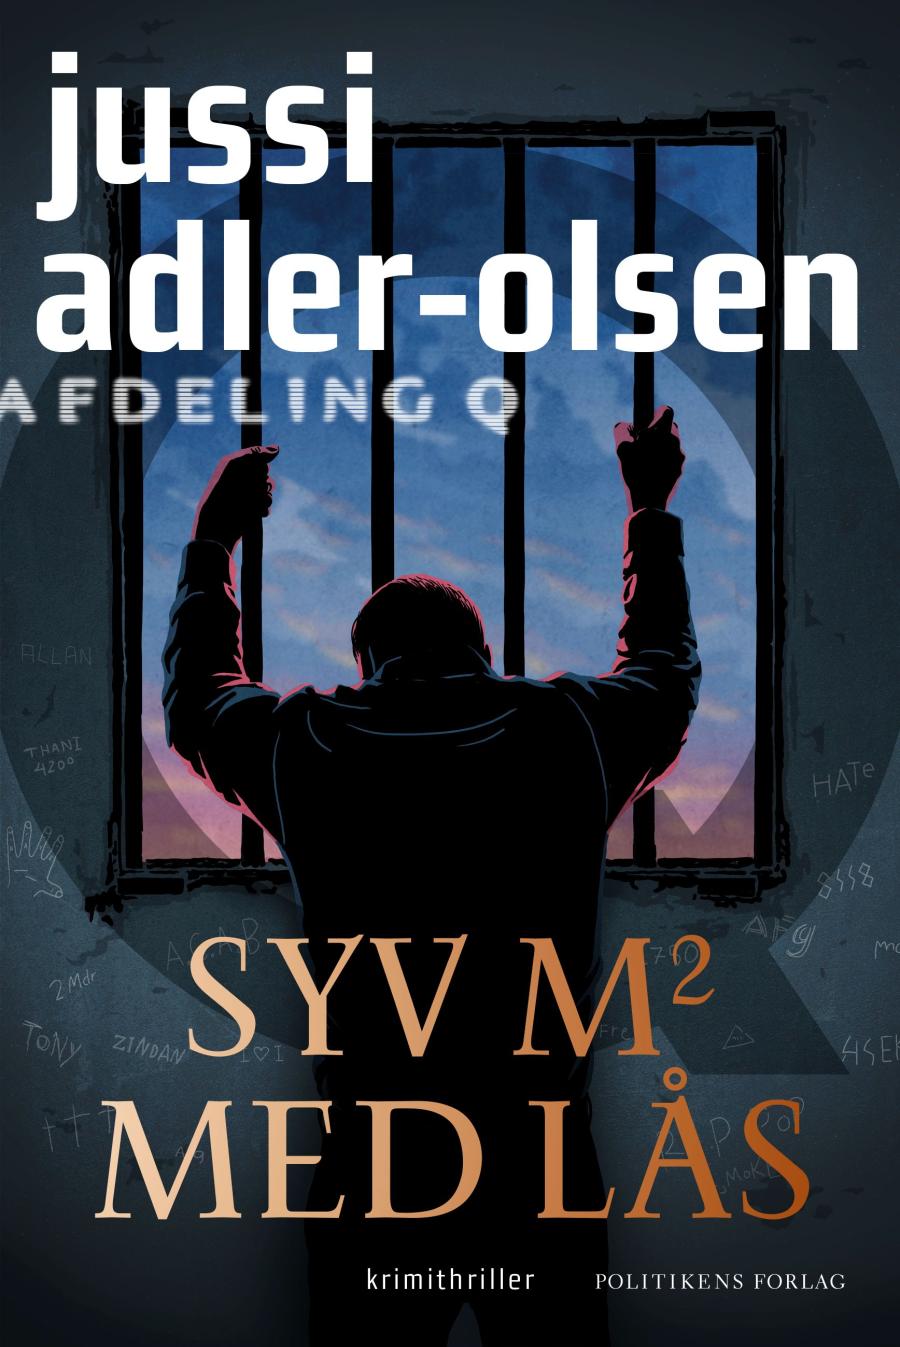 Jussi Adler-Olsen Syv m2 med lås